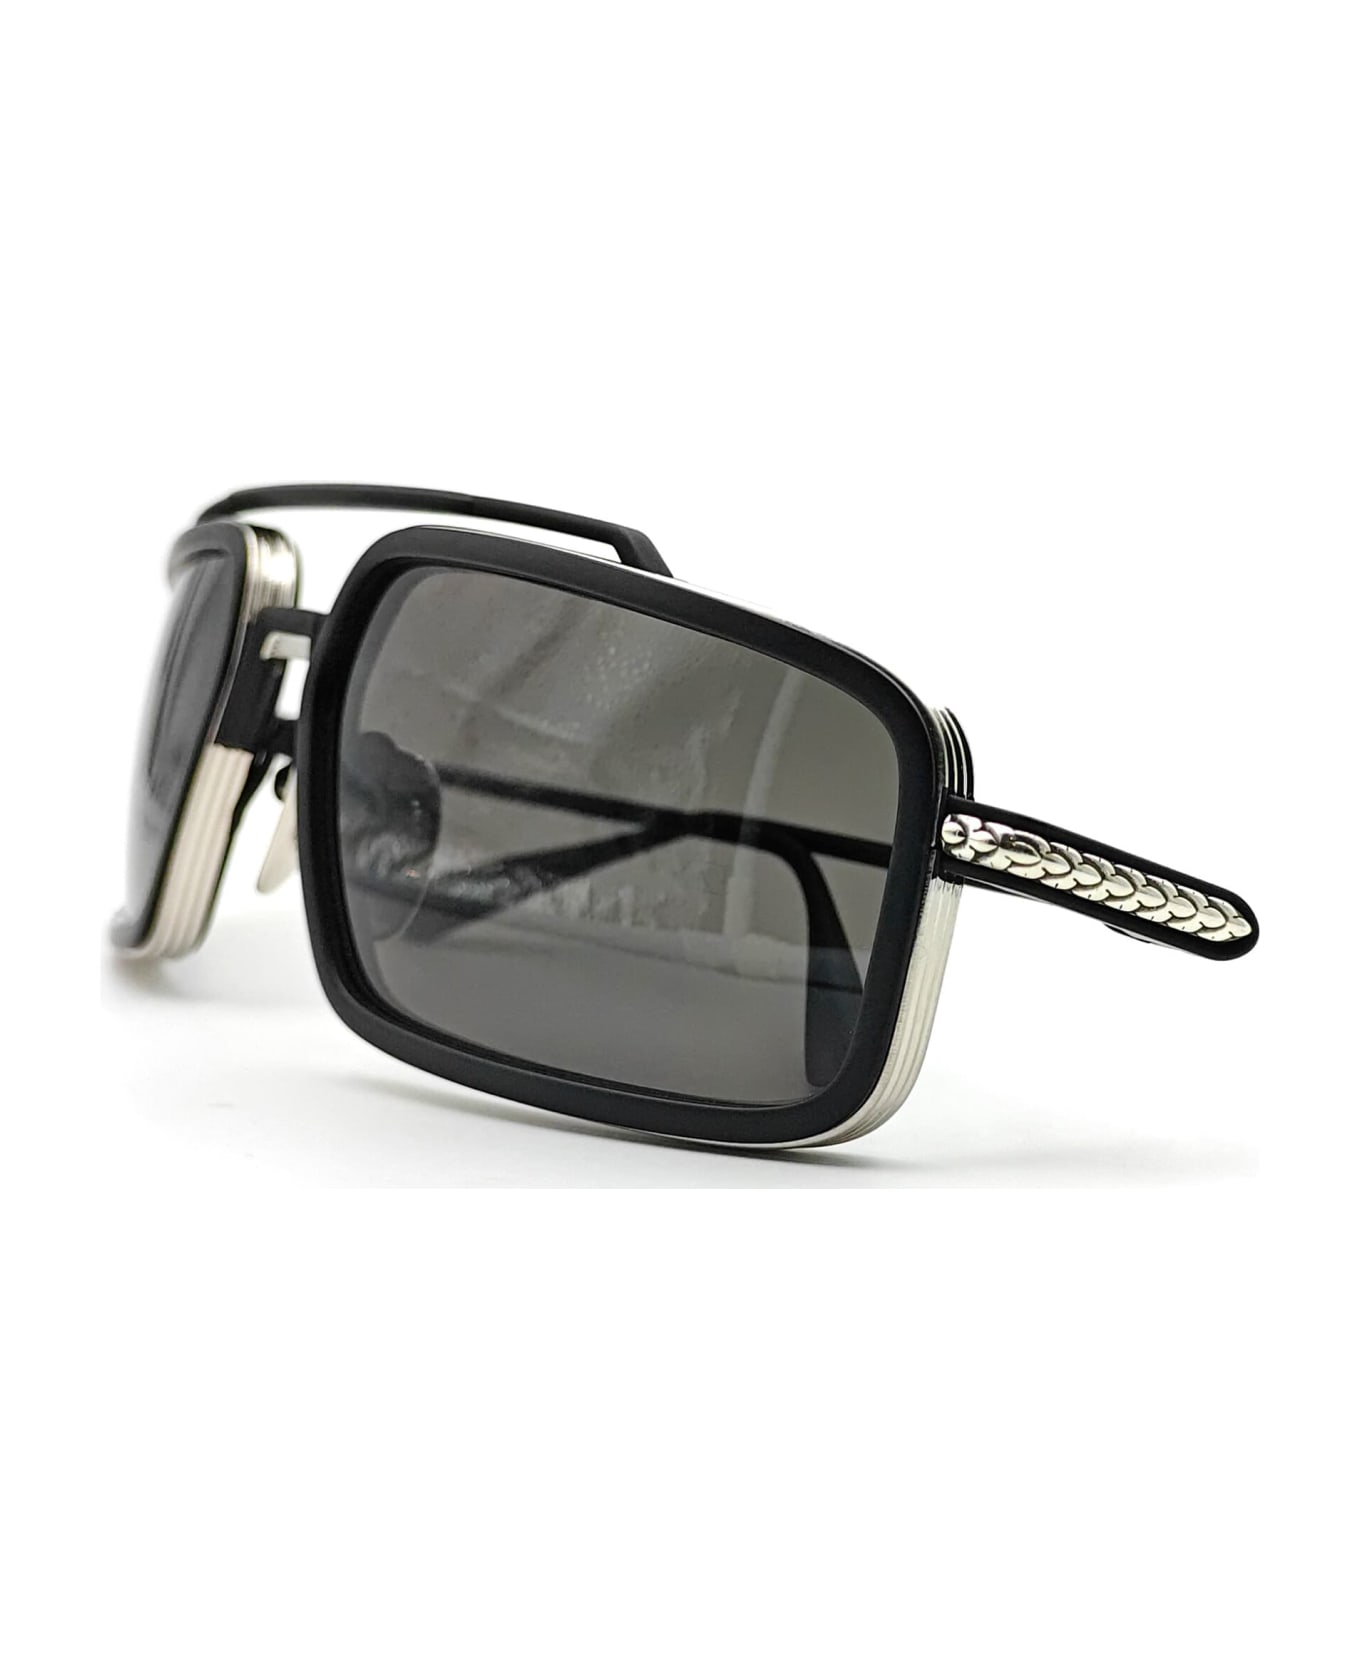 Chrome Hearts Eader - Brushed Silver / Matte Black Sunglasses - Matte black